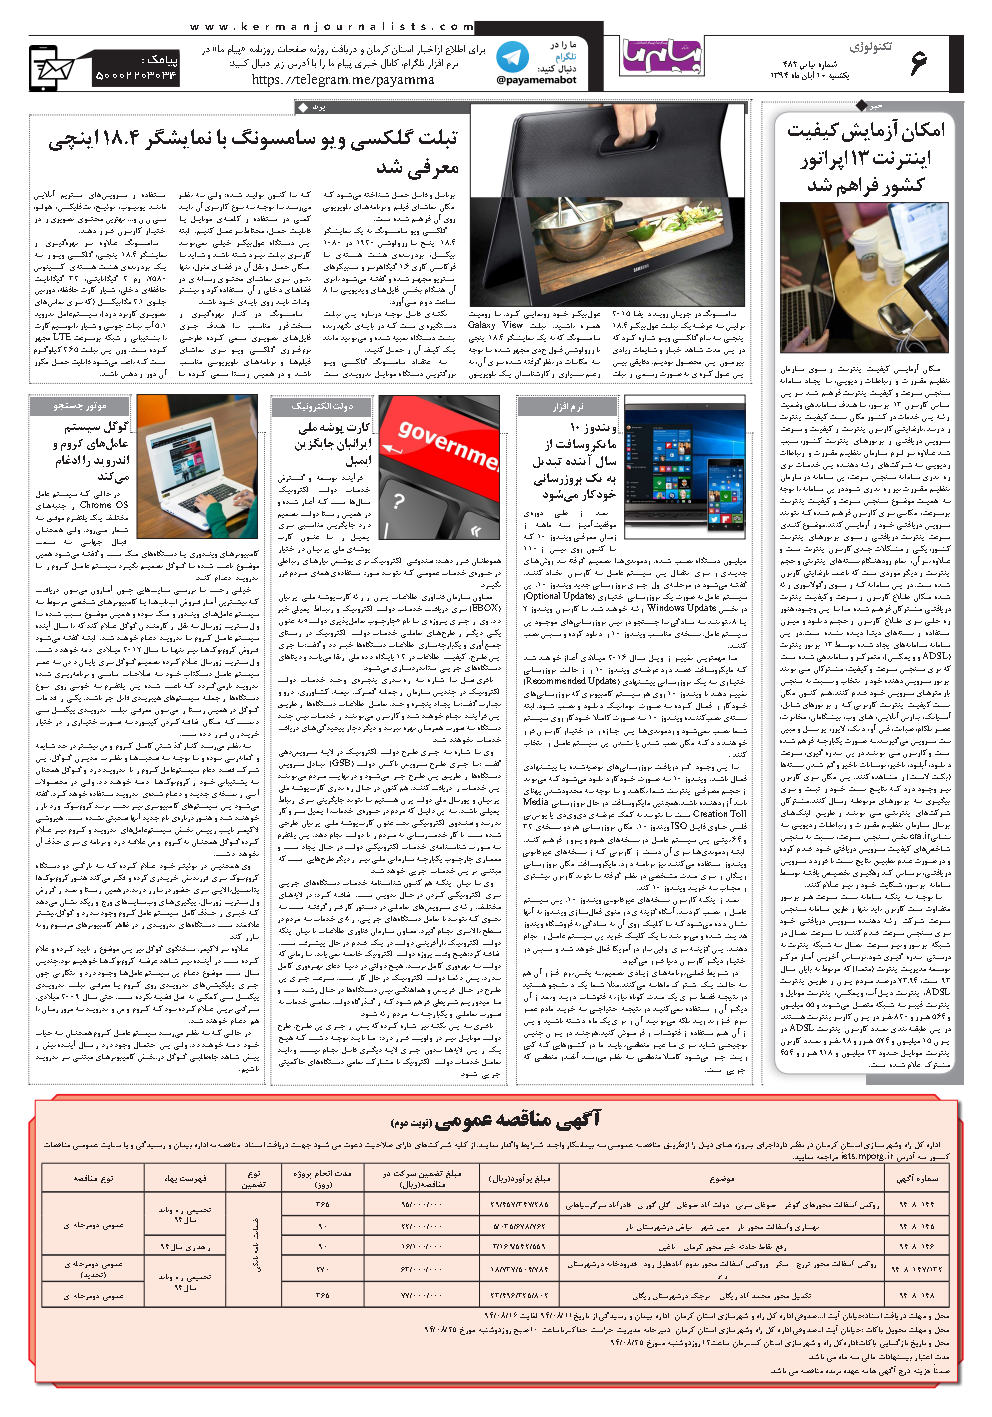 صفحه تکنولوژی شماره شماره ۴۸۲ روزنامه پیام ما